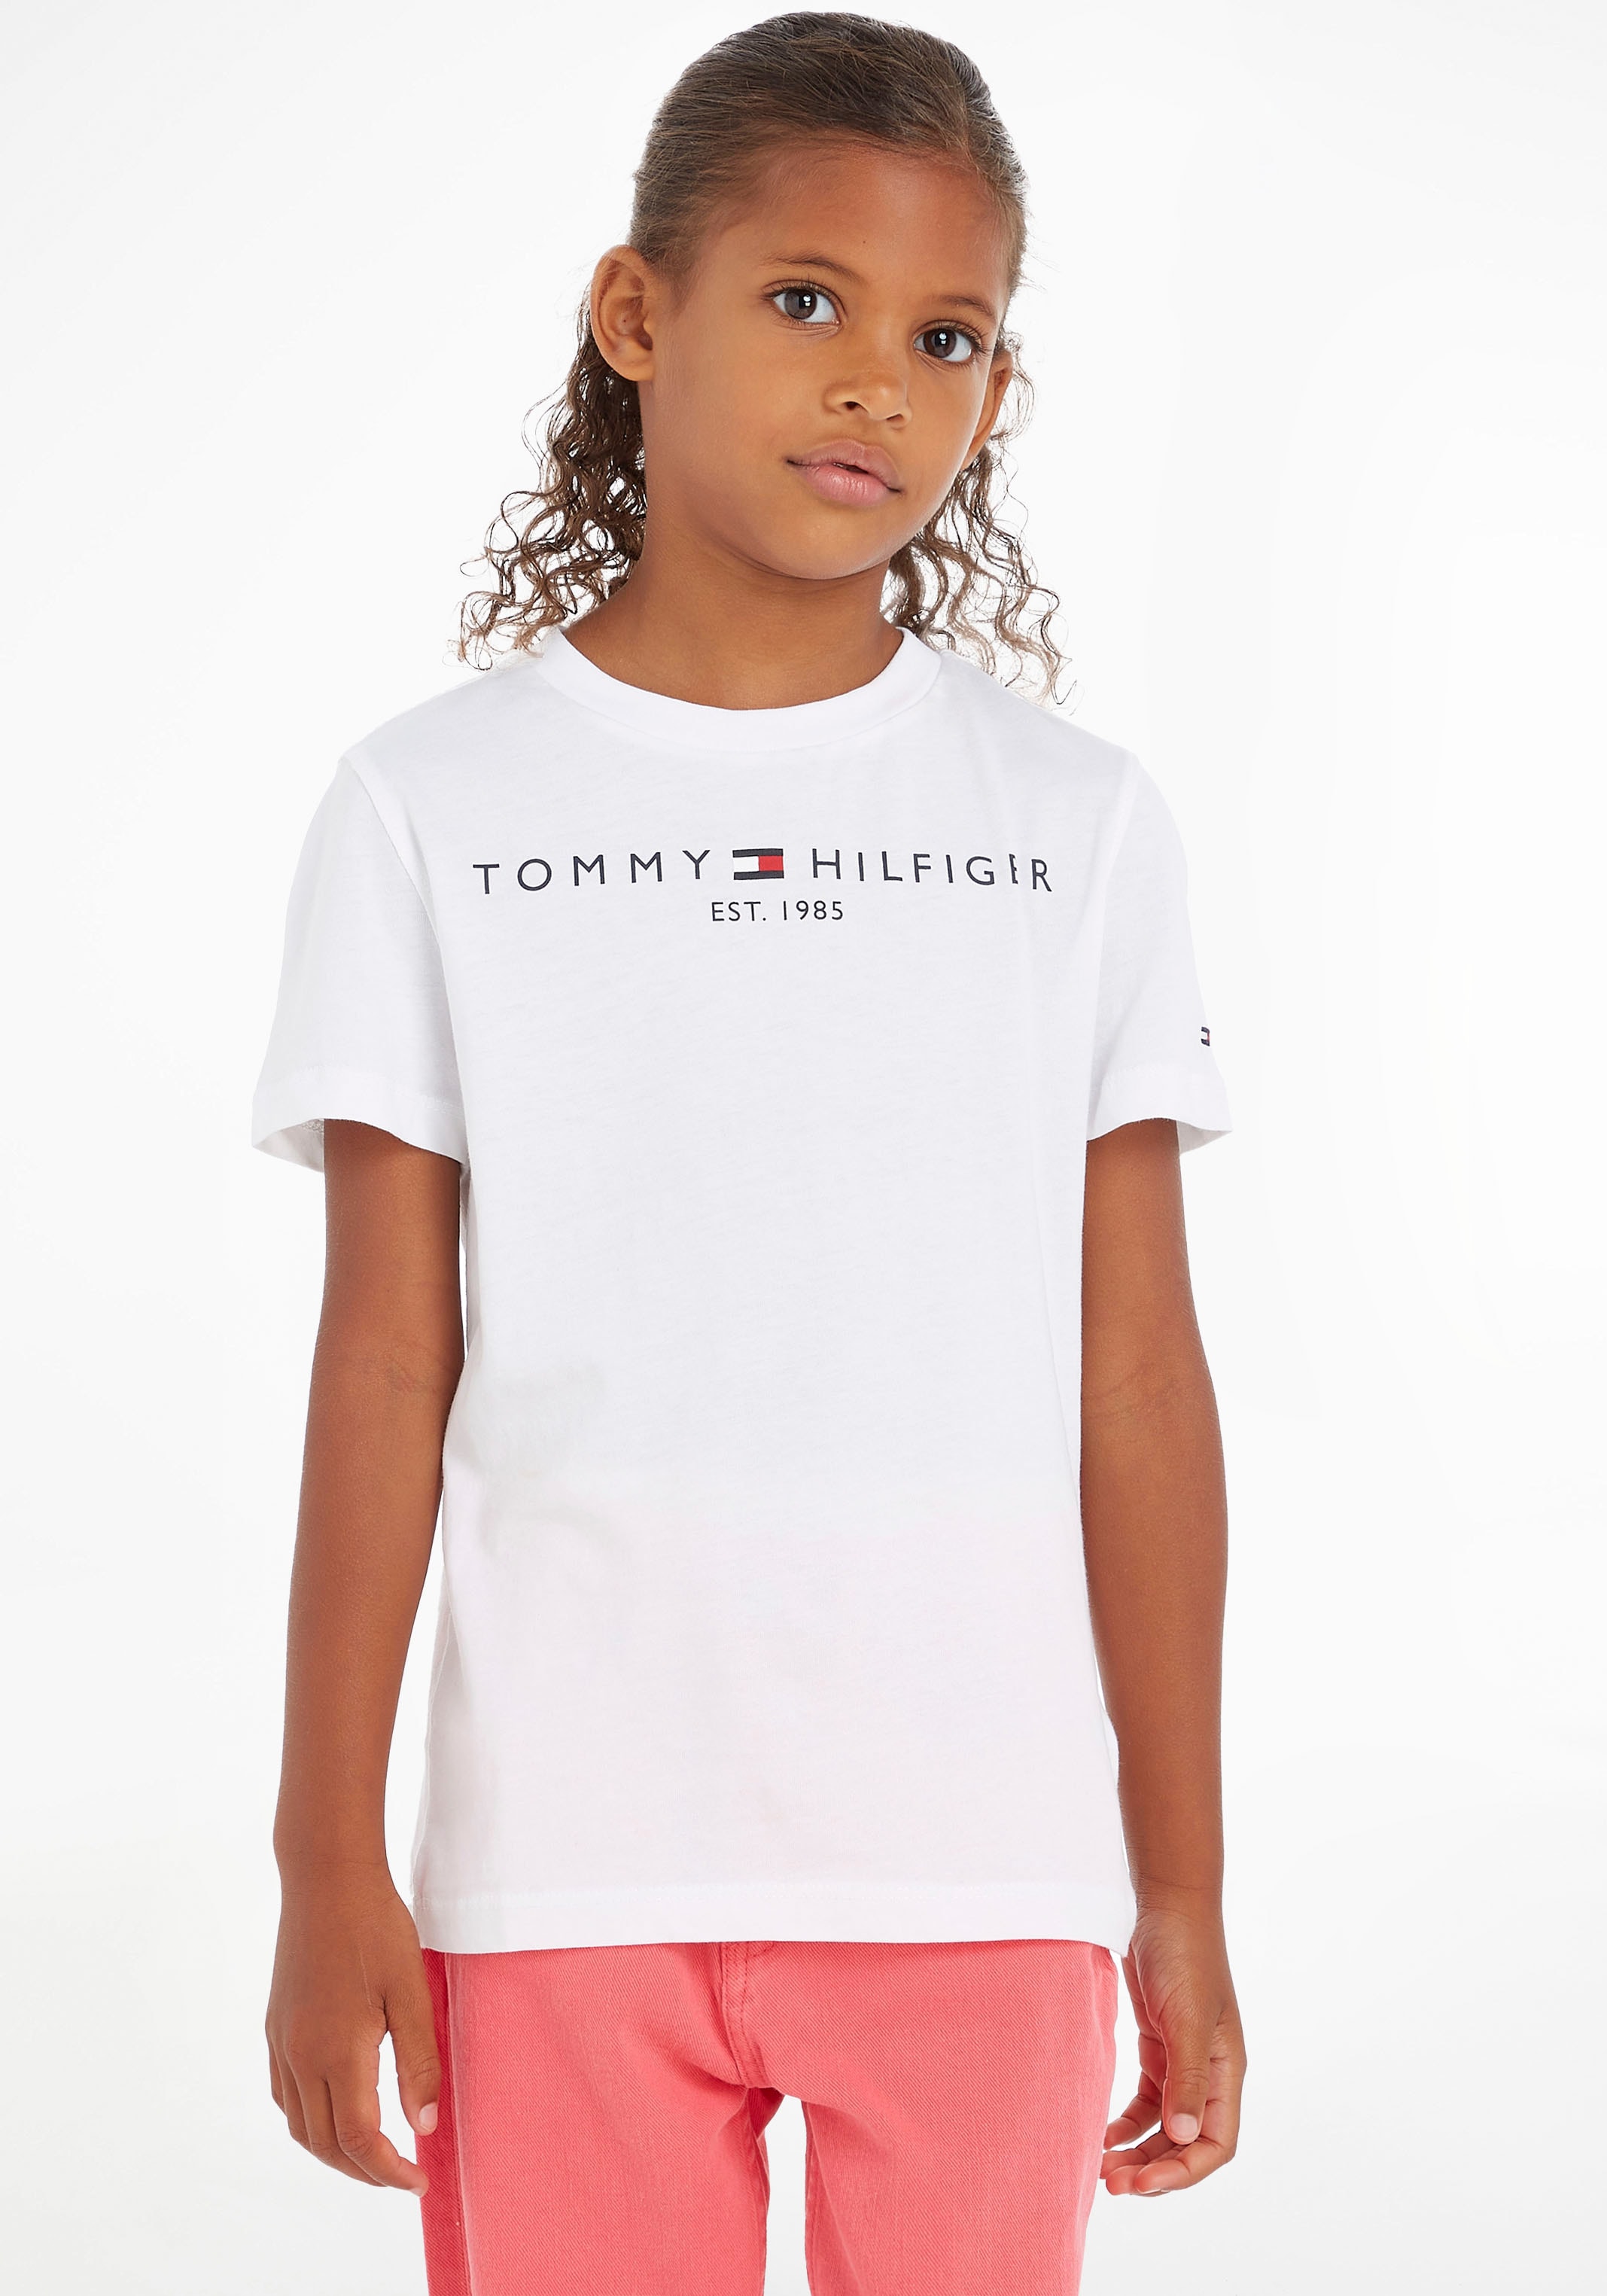 Mädchen Junior online TEE«, »ESSENTIAL Hilfiger MiniMe,für Jungen und T-Shirt Kinder Tommy bestellen Kids